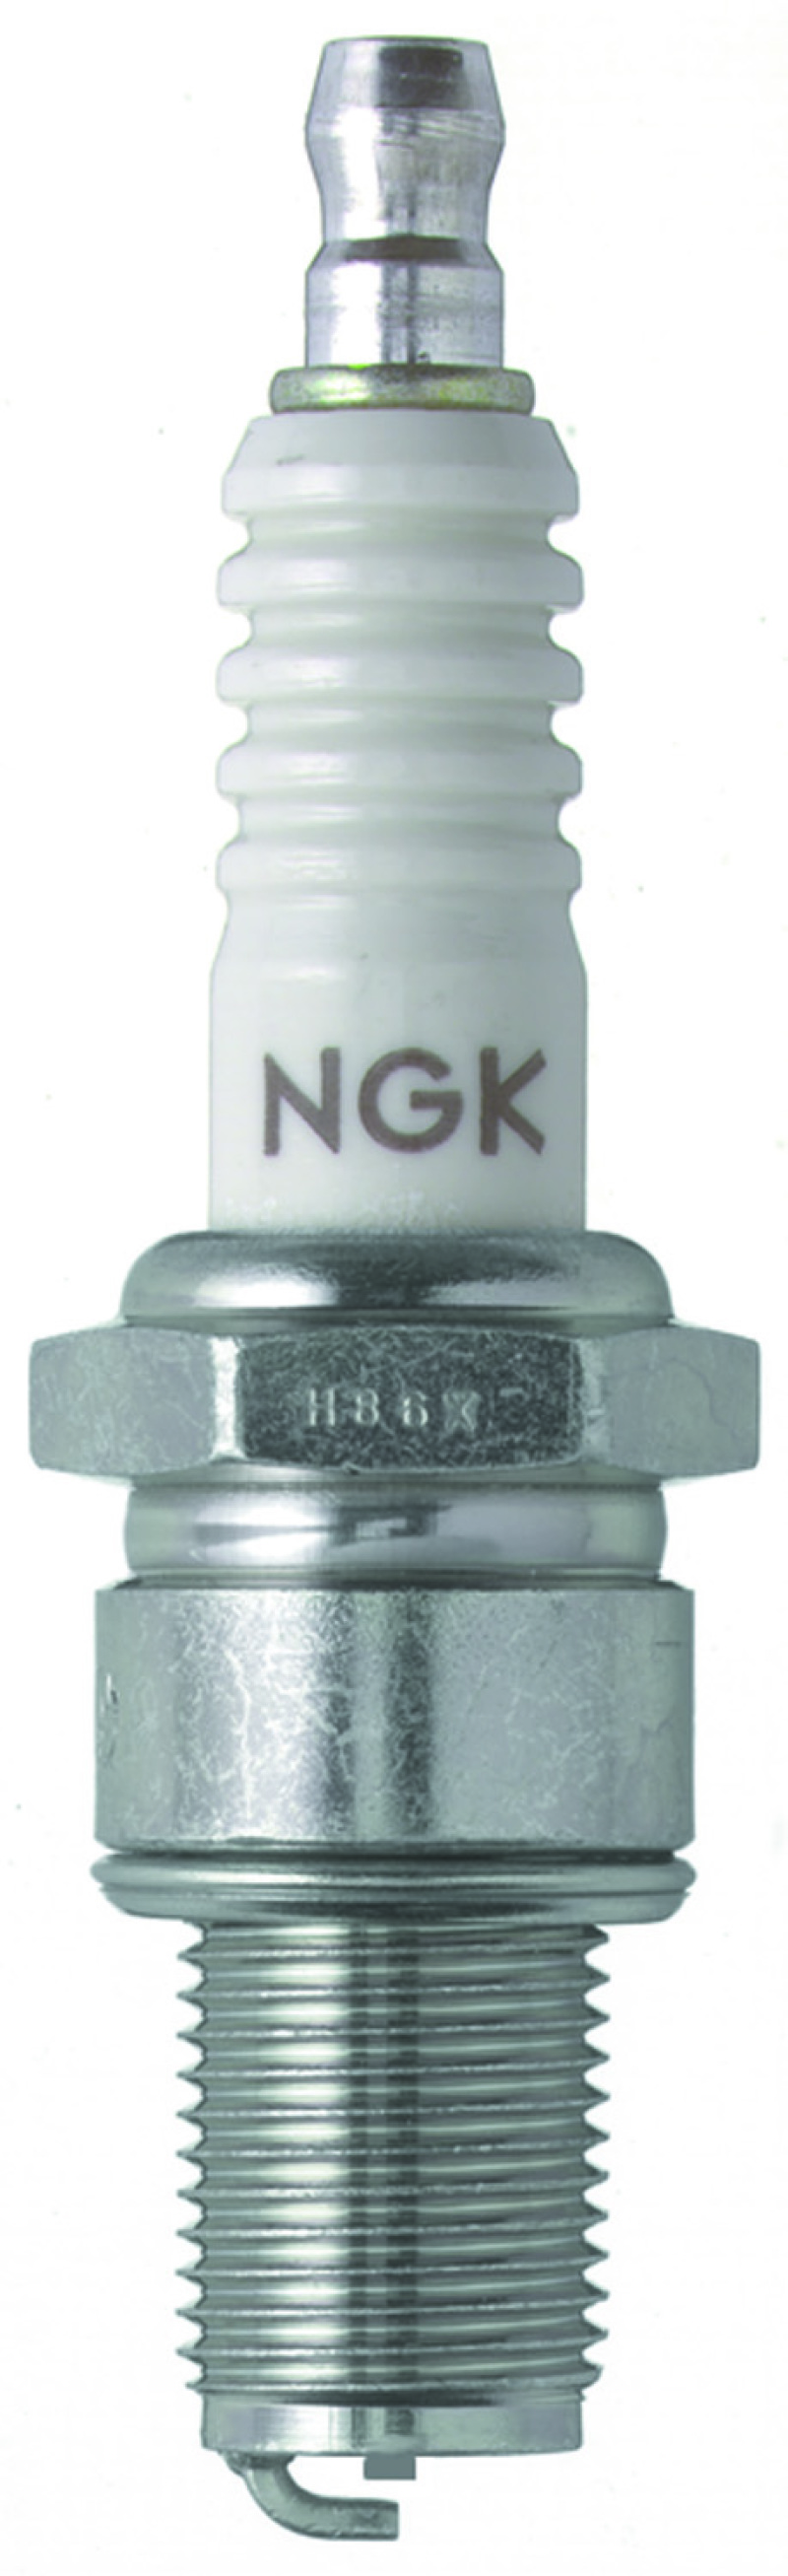 NGK Racing Spark Plug Box of 4 (B9EG) - 3530